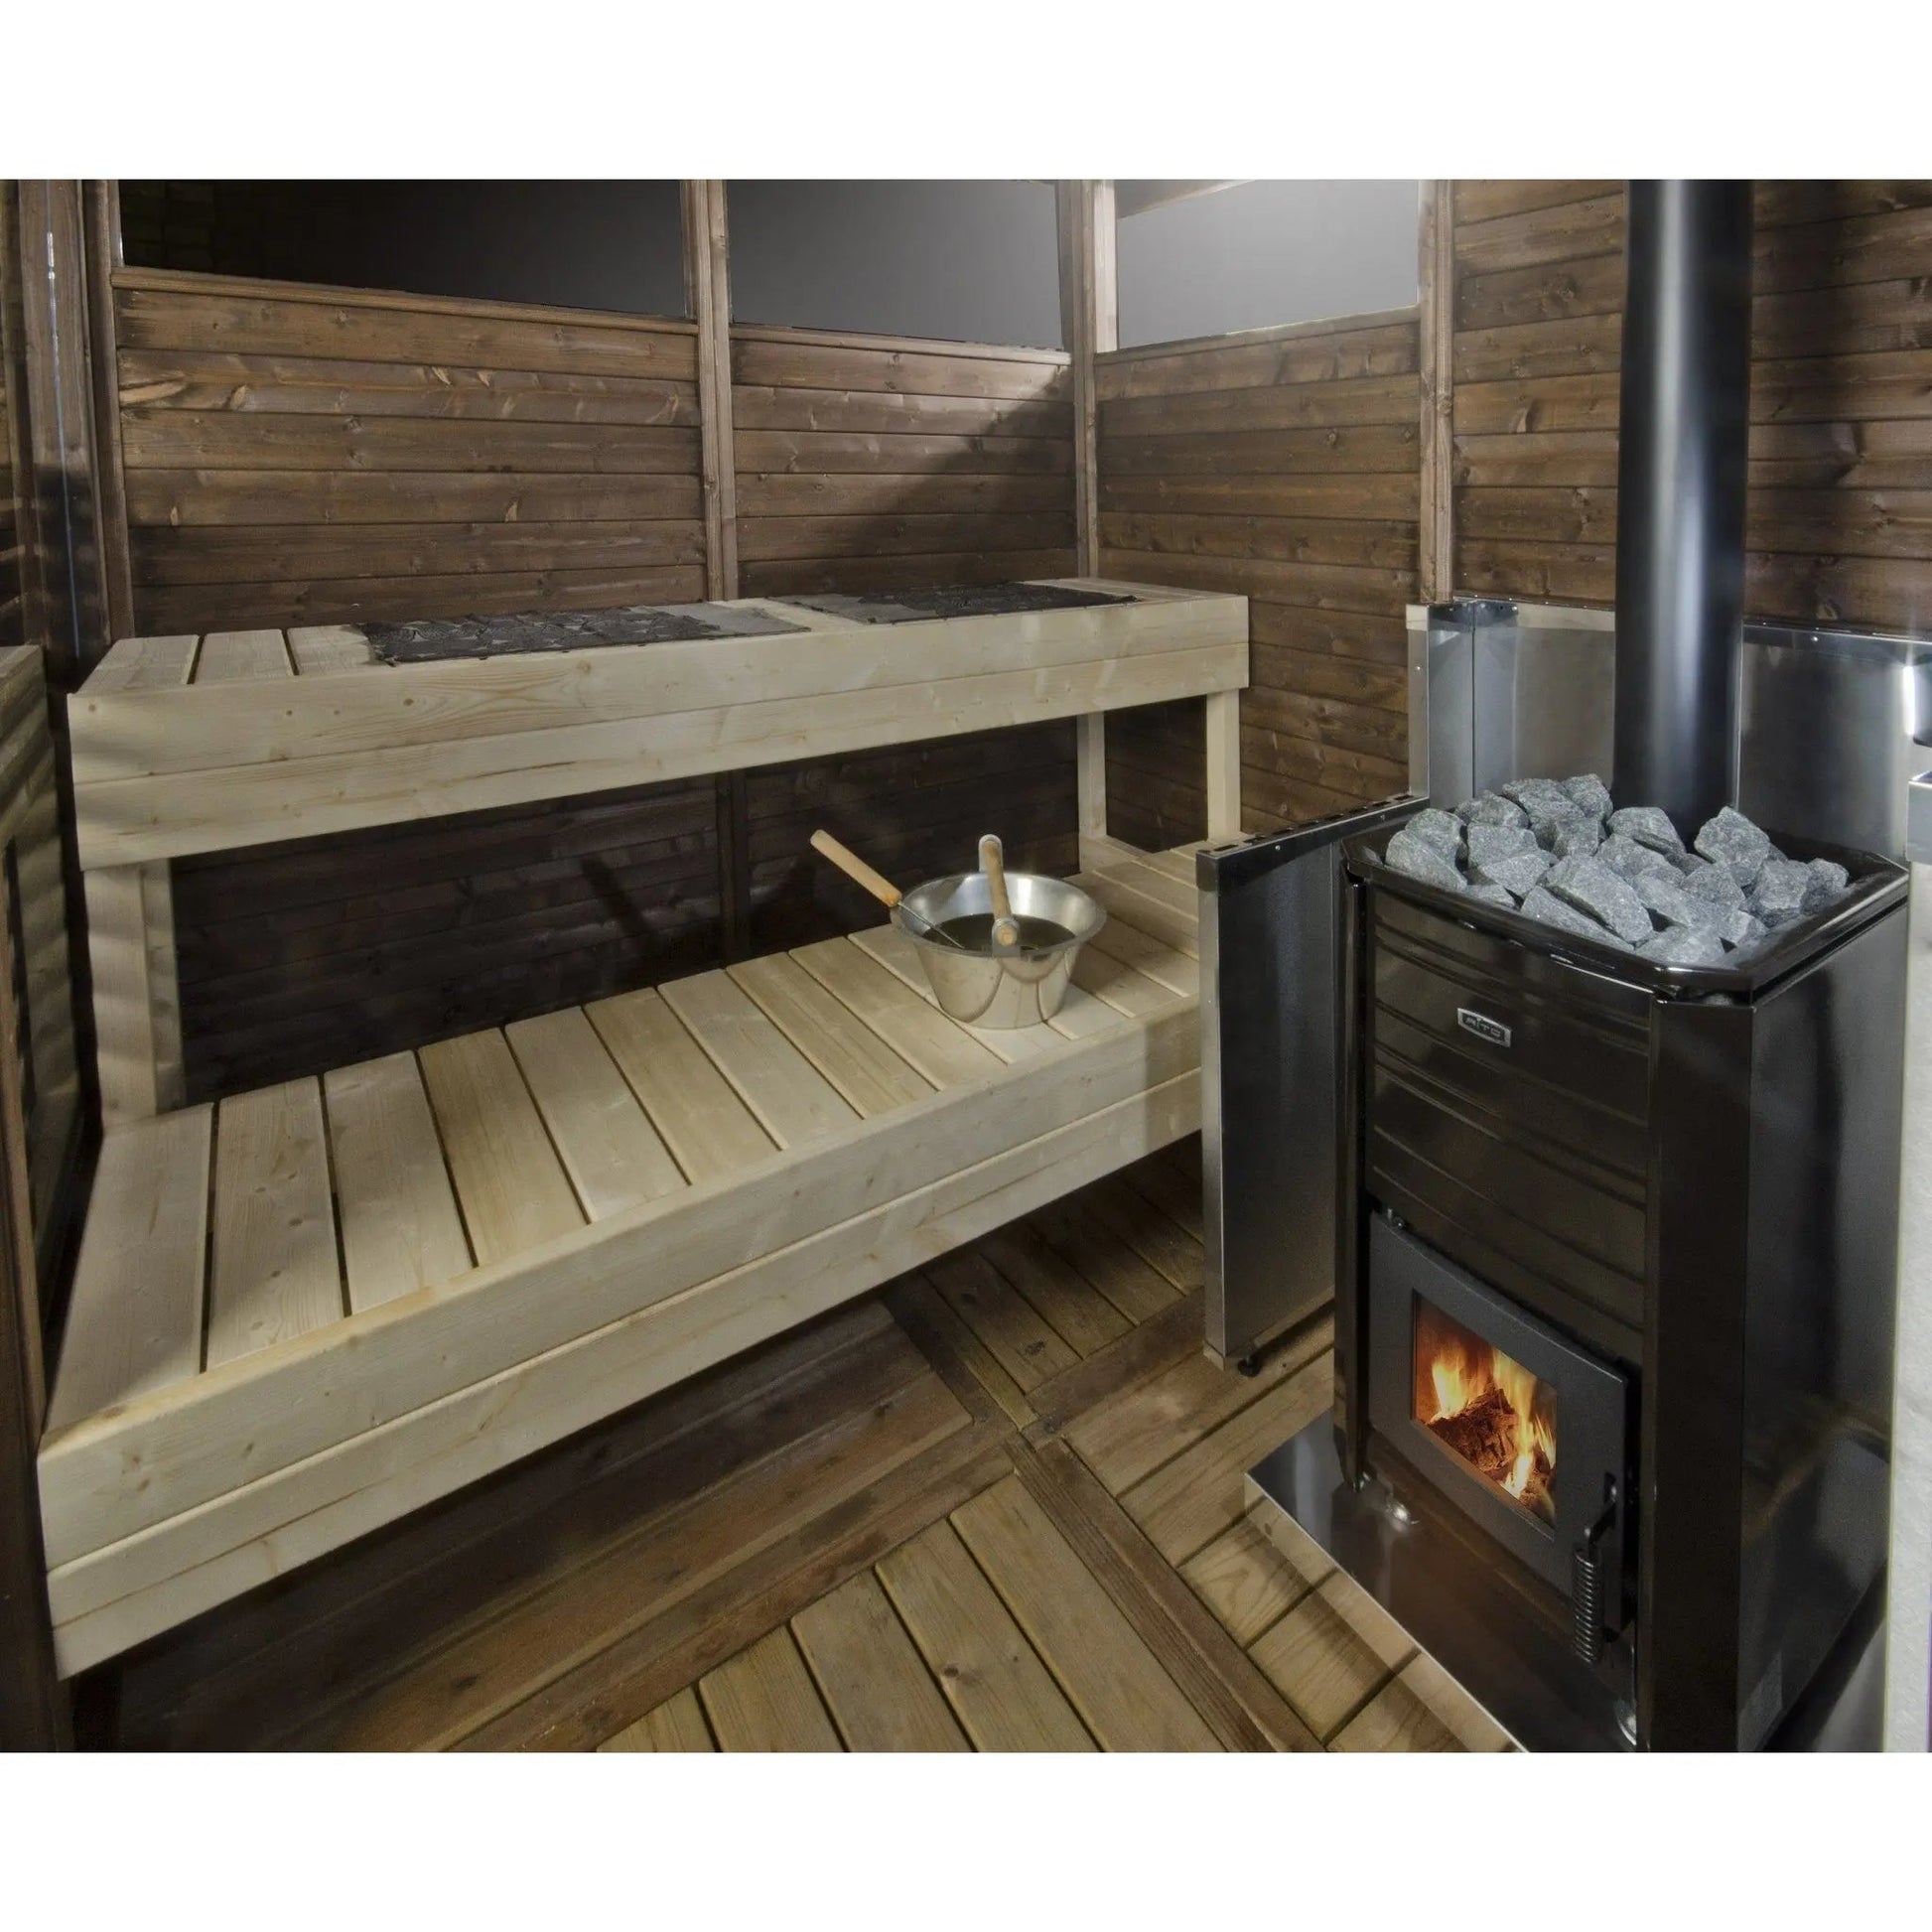 Kota Outdoor/Garden 'Pihasauna' Sauna Cabin Kit 2x2m Sauna Cabin | Finnmark Sauna